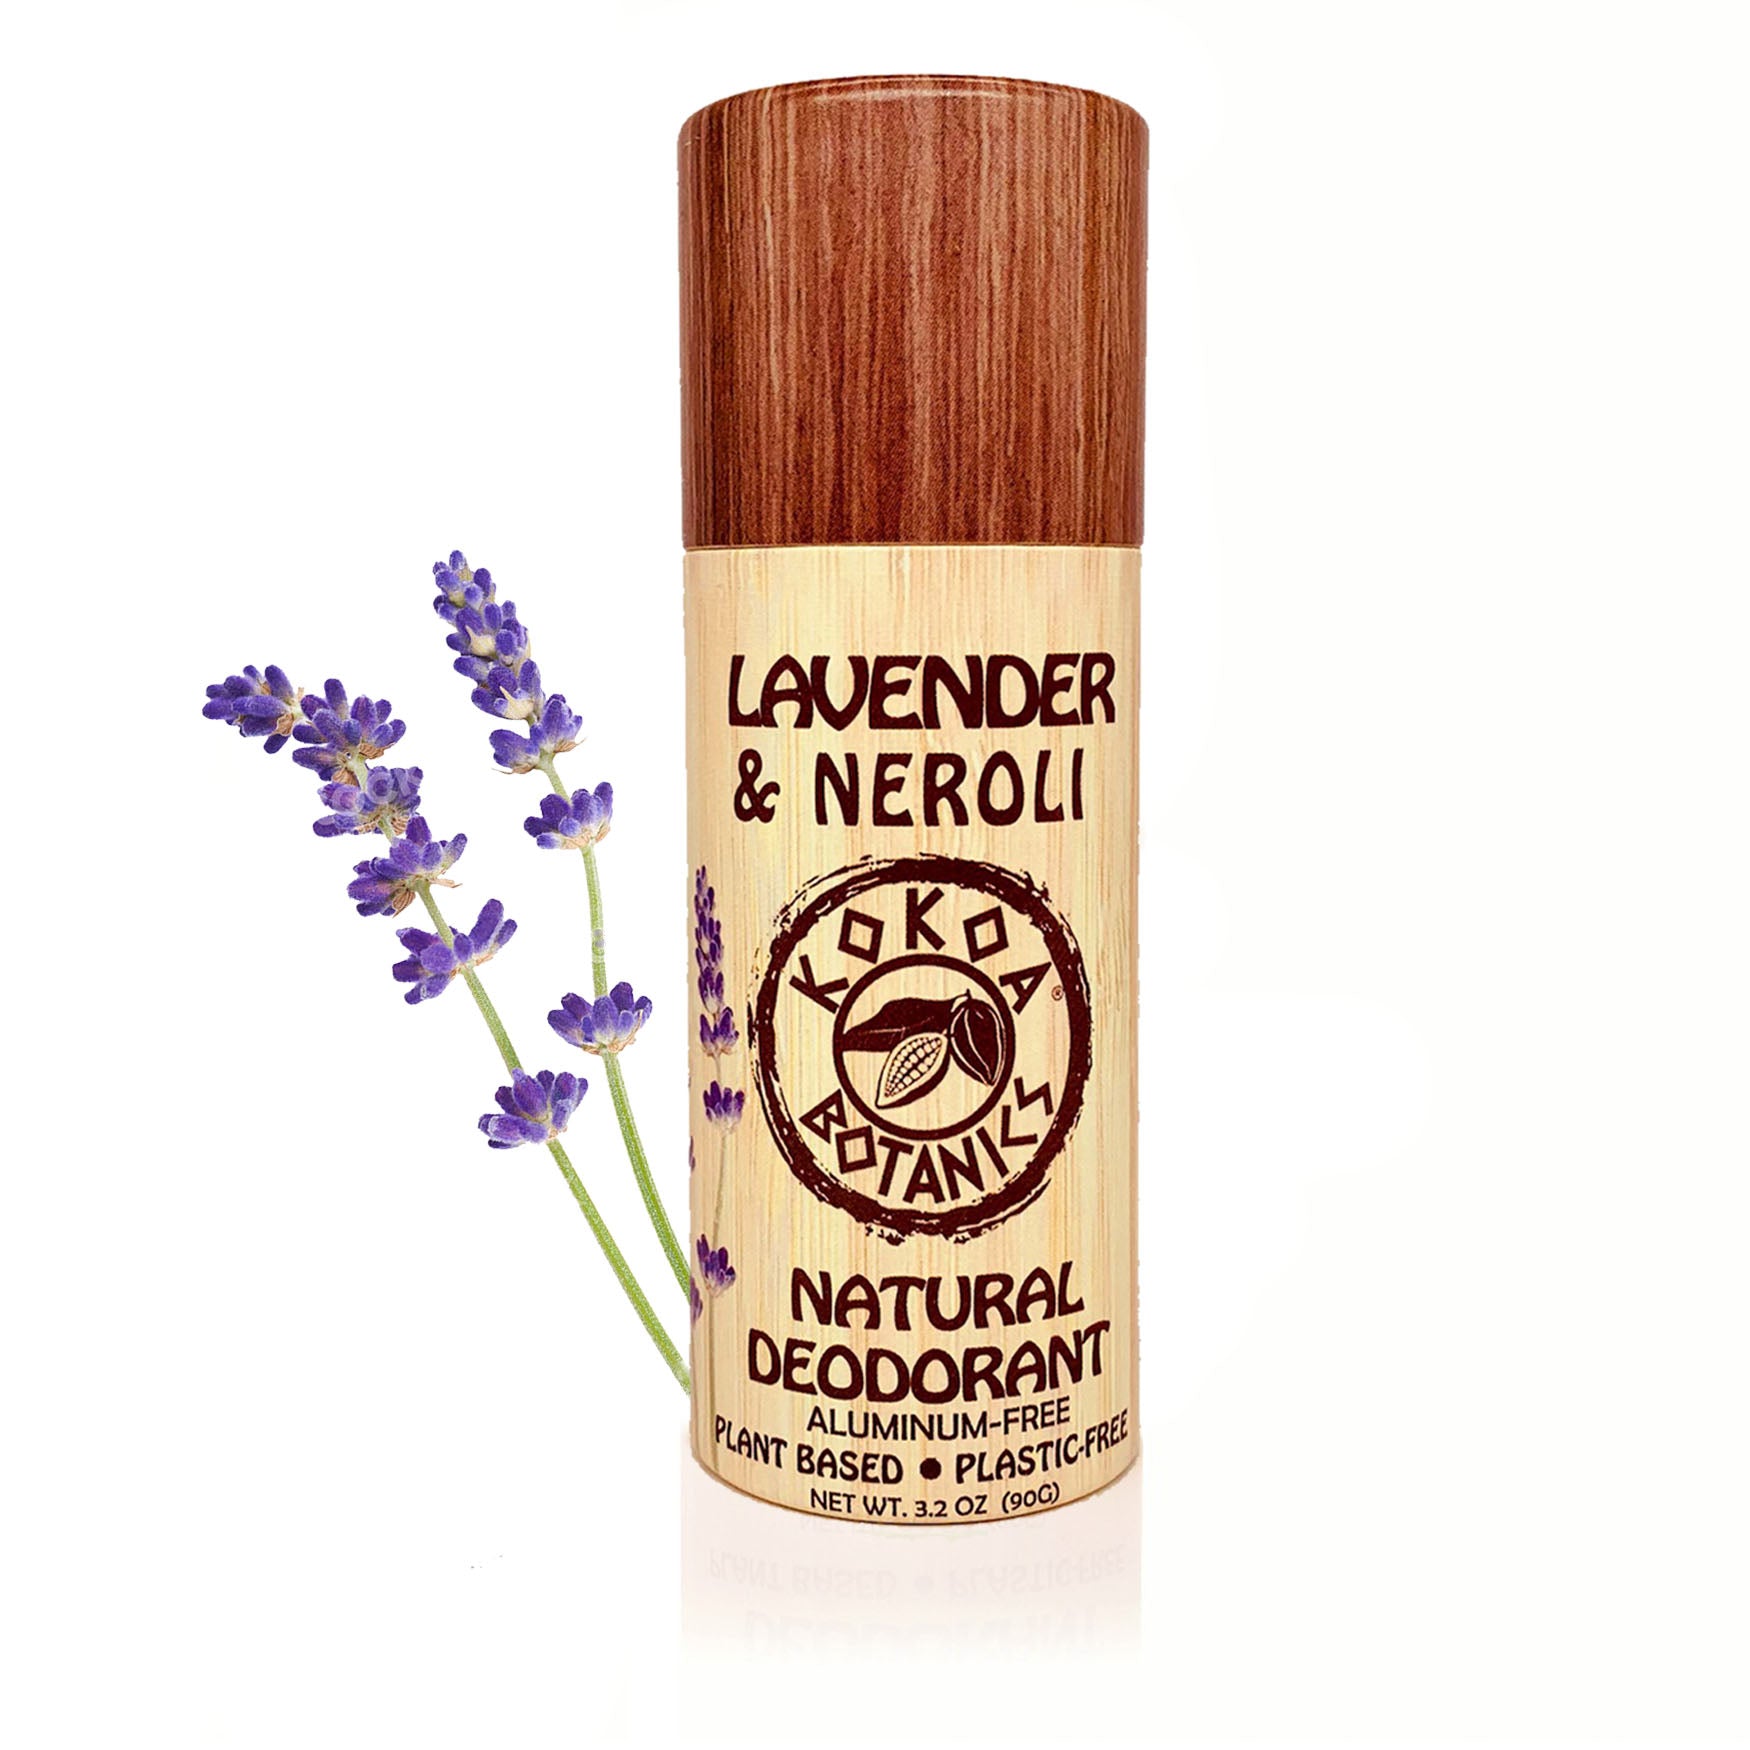 LAVENDER & NEROLI - Natural Deodorant - Sport - Aluminum-Free - Plastic-Free 3.2 oz